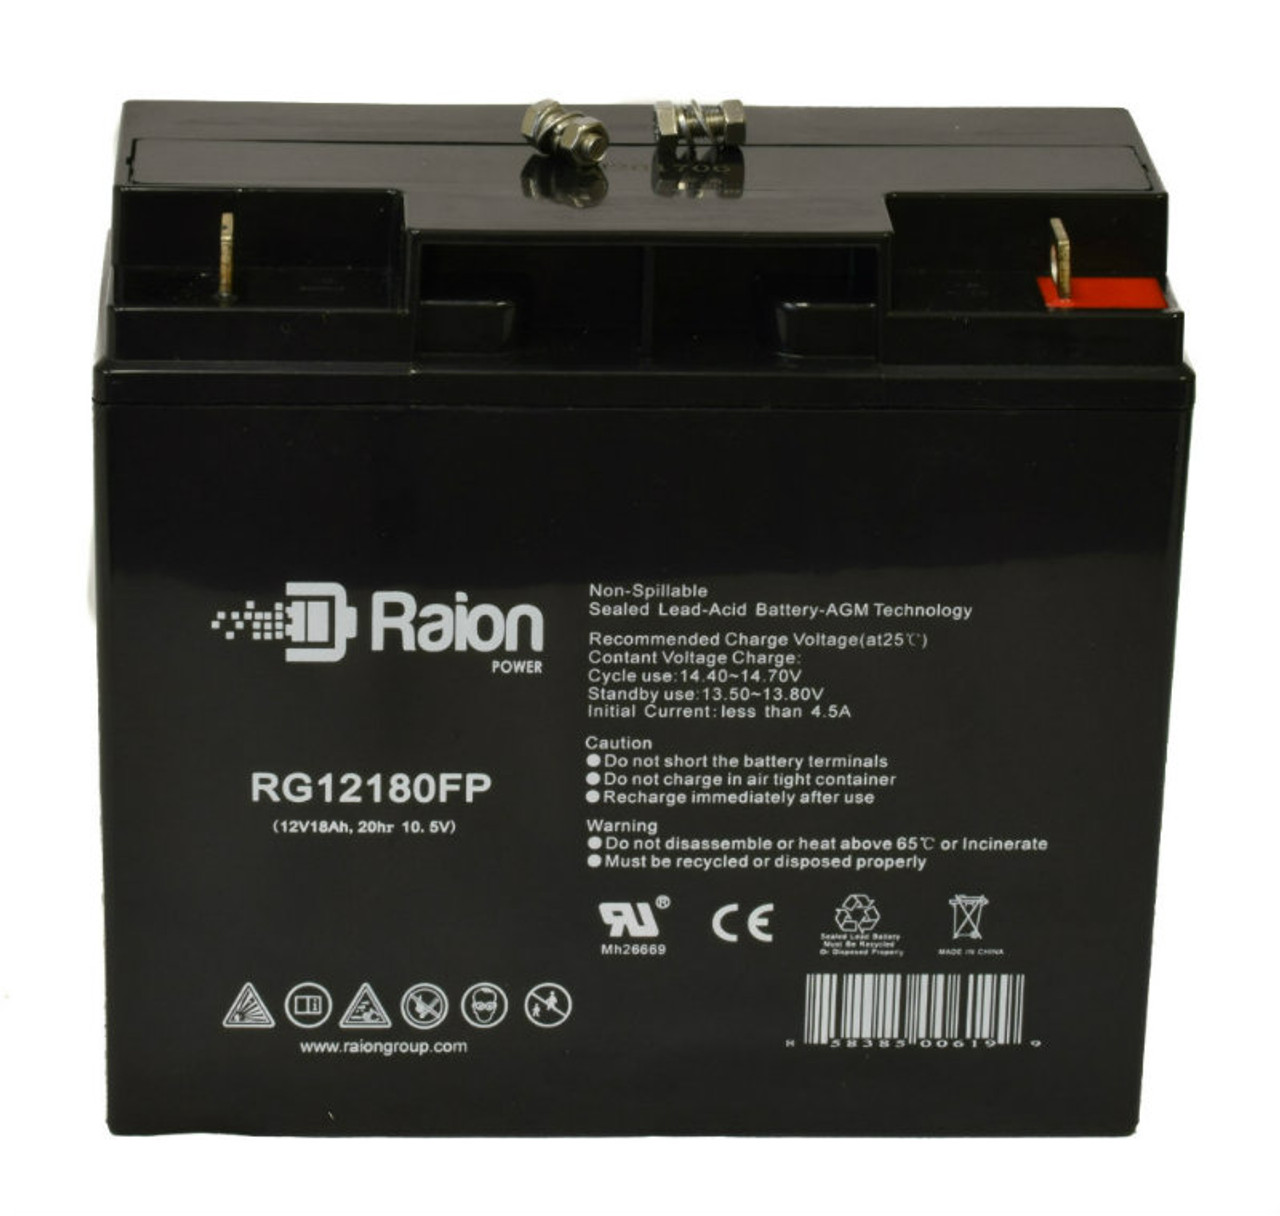 Raion Power RG12180FP 12V 18Ah Lead Acid Battery for Emmo Hornet (60V)